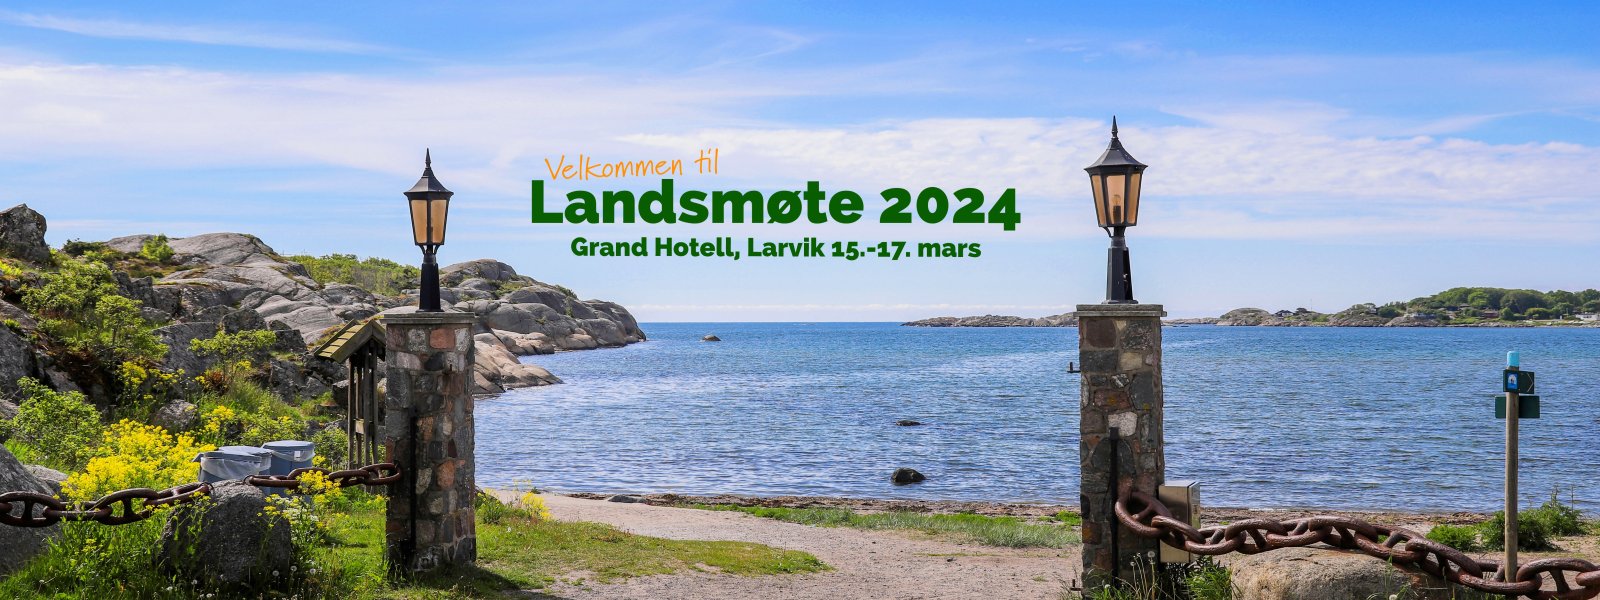 2022 Porten til sommer, Stavern, Vestfold kopi_pe